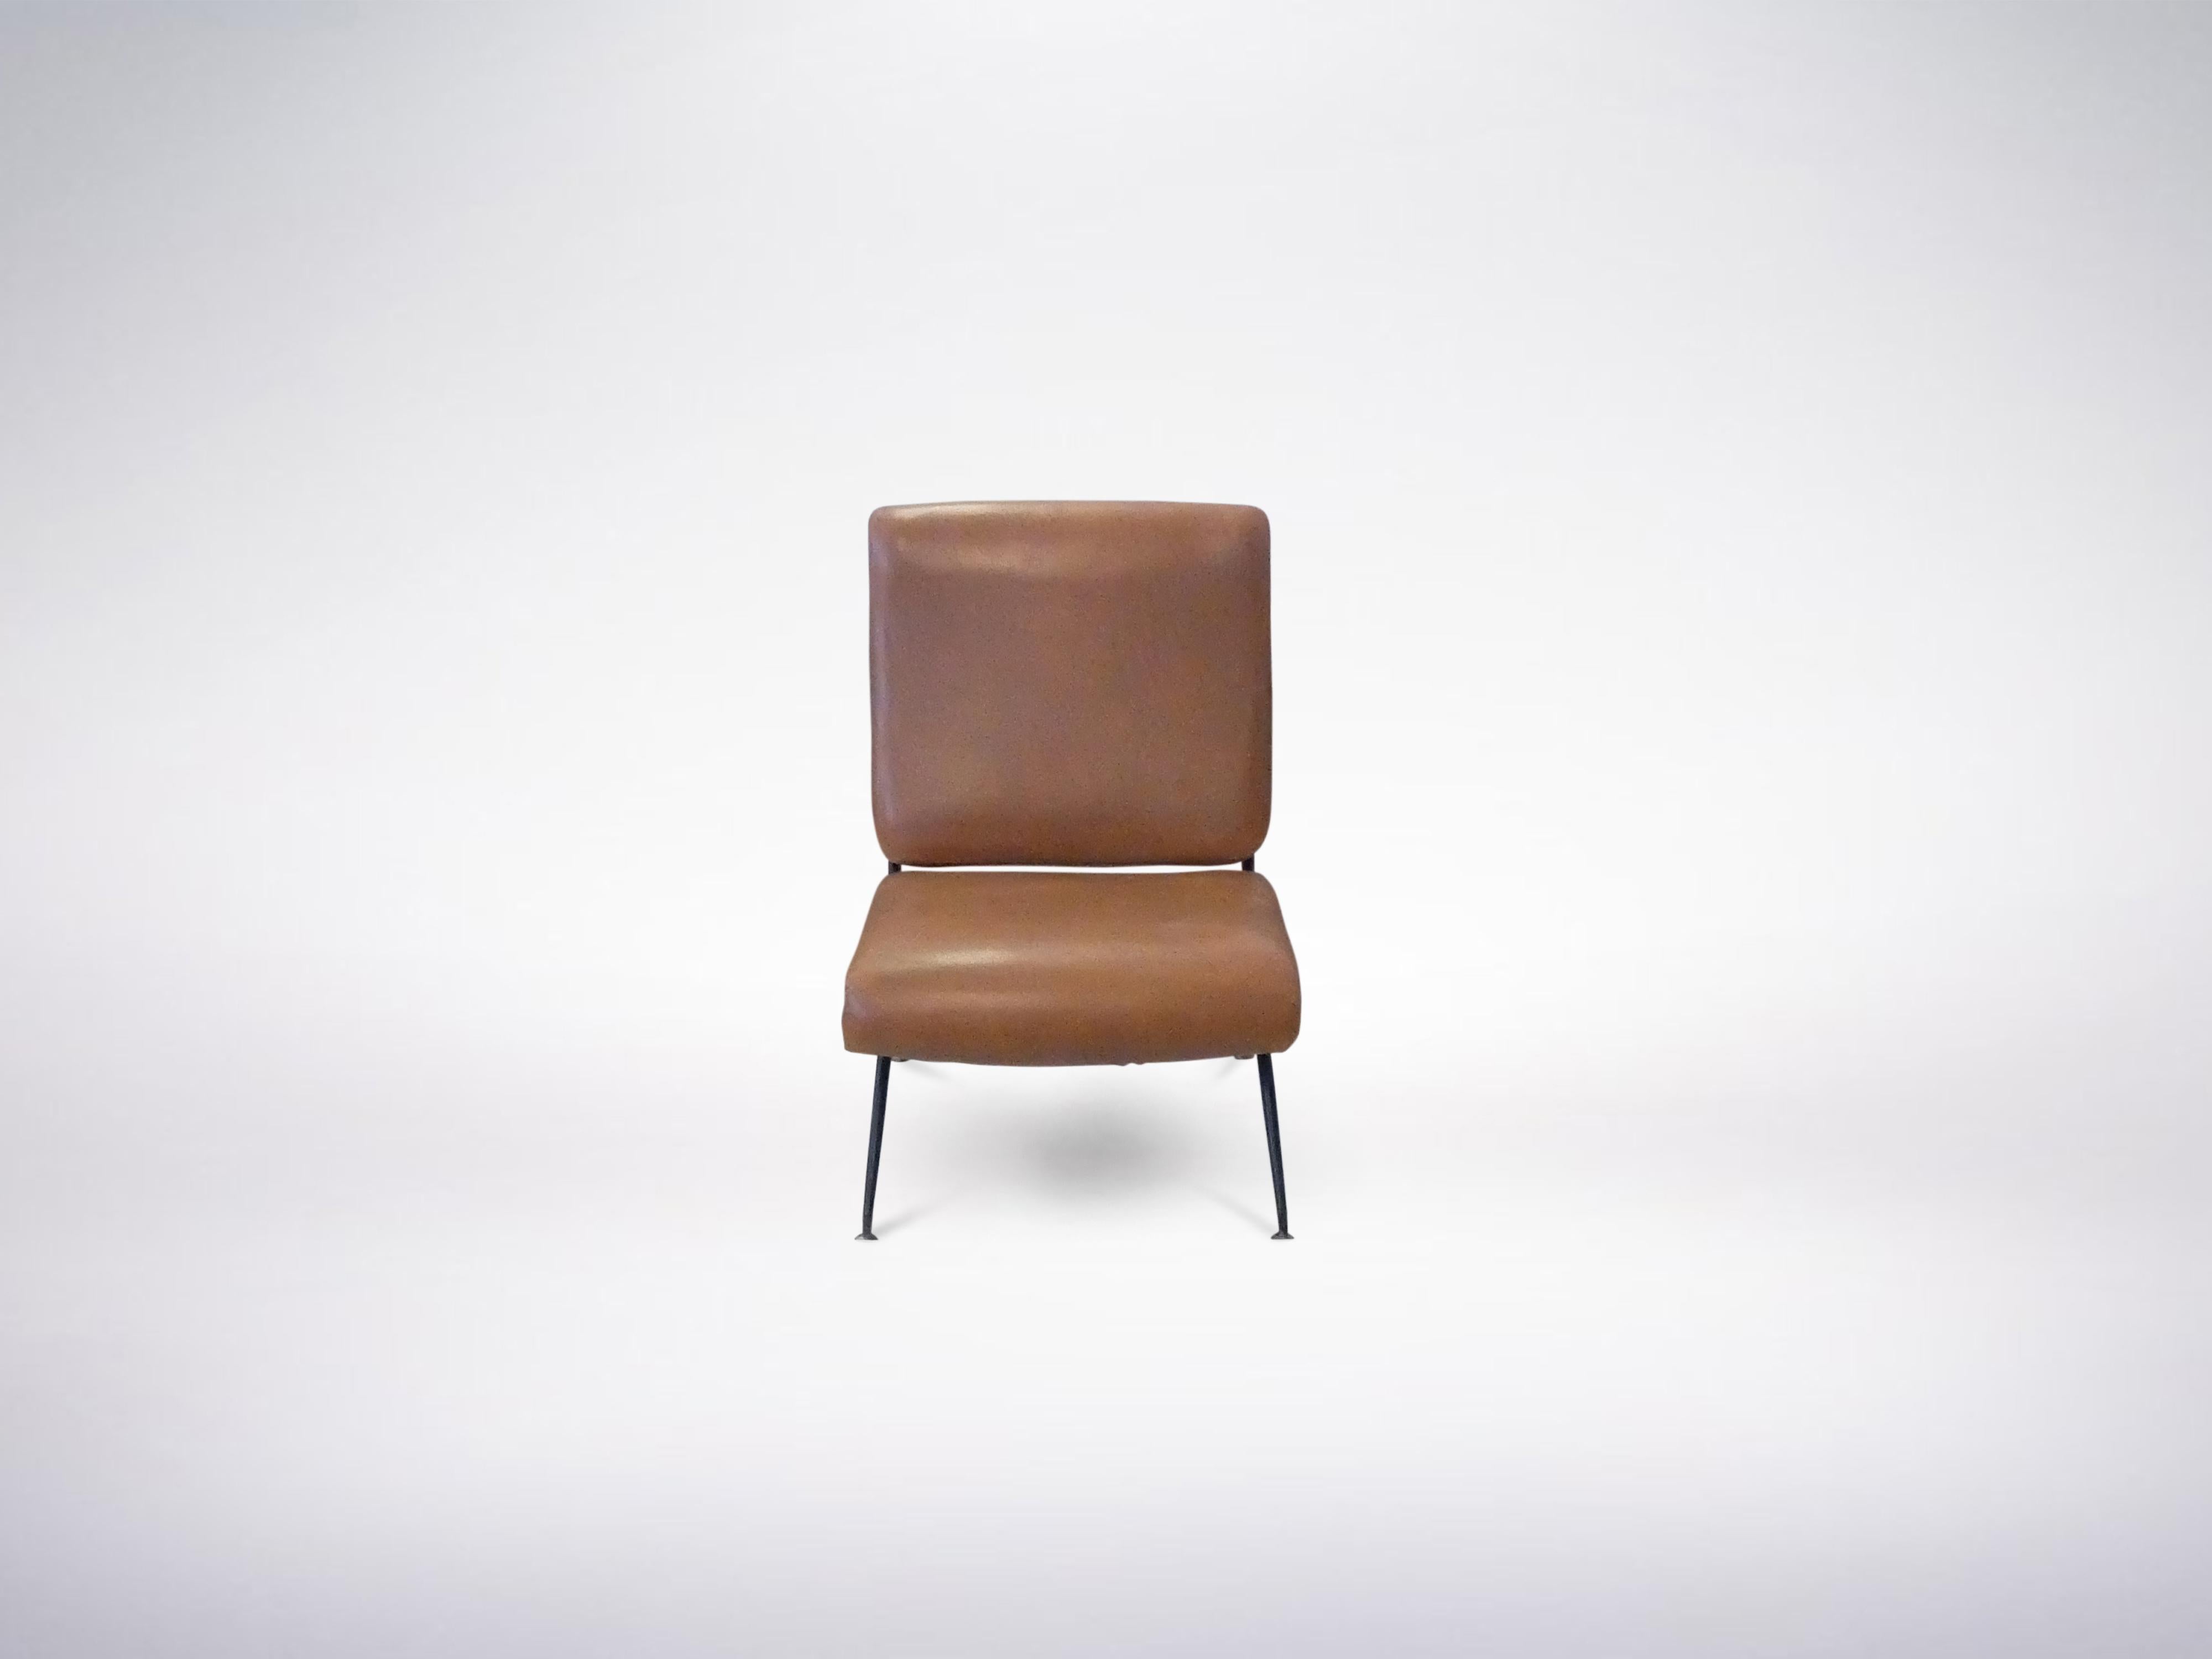 Gastone Rinaldi for RIMA, Italian Mid-Century Modern leather armchair Model DU24, 1956

Literature : Gastone Rinaldi Designer alla Rima, by Giuseppe and Jacopo Drago, 2015.



Please note : the 